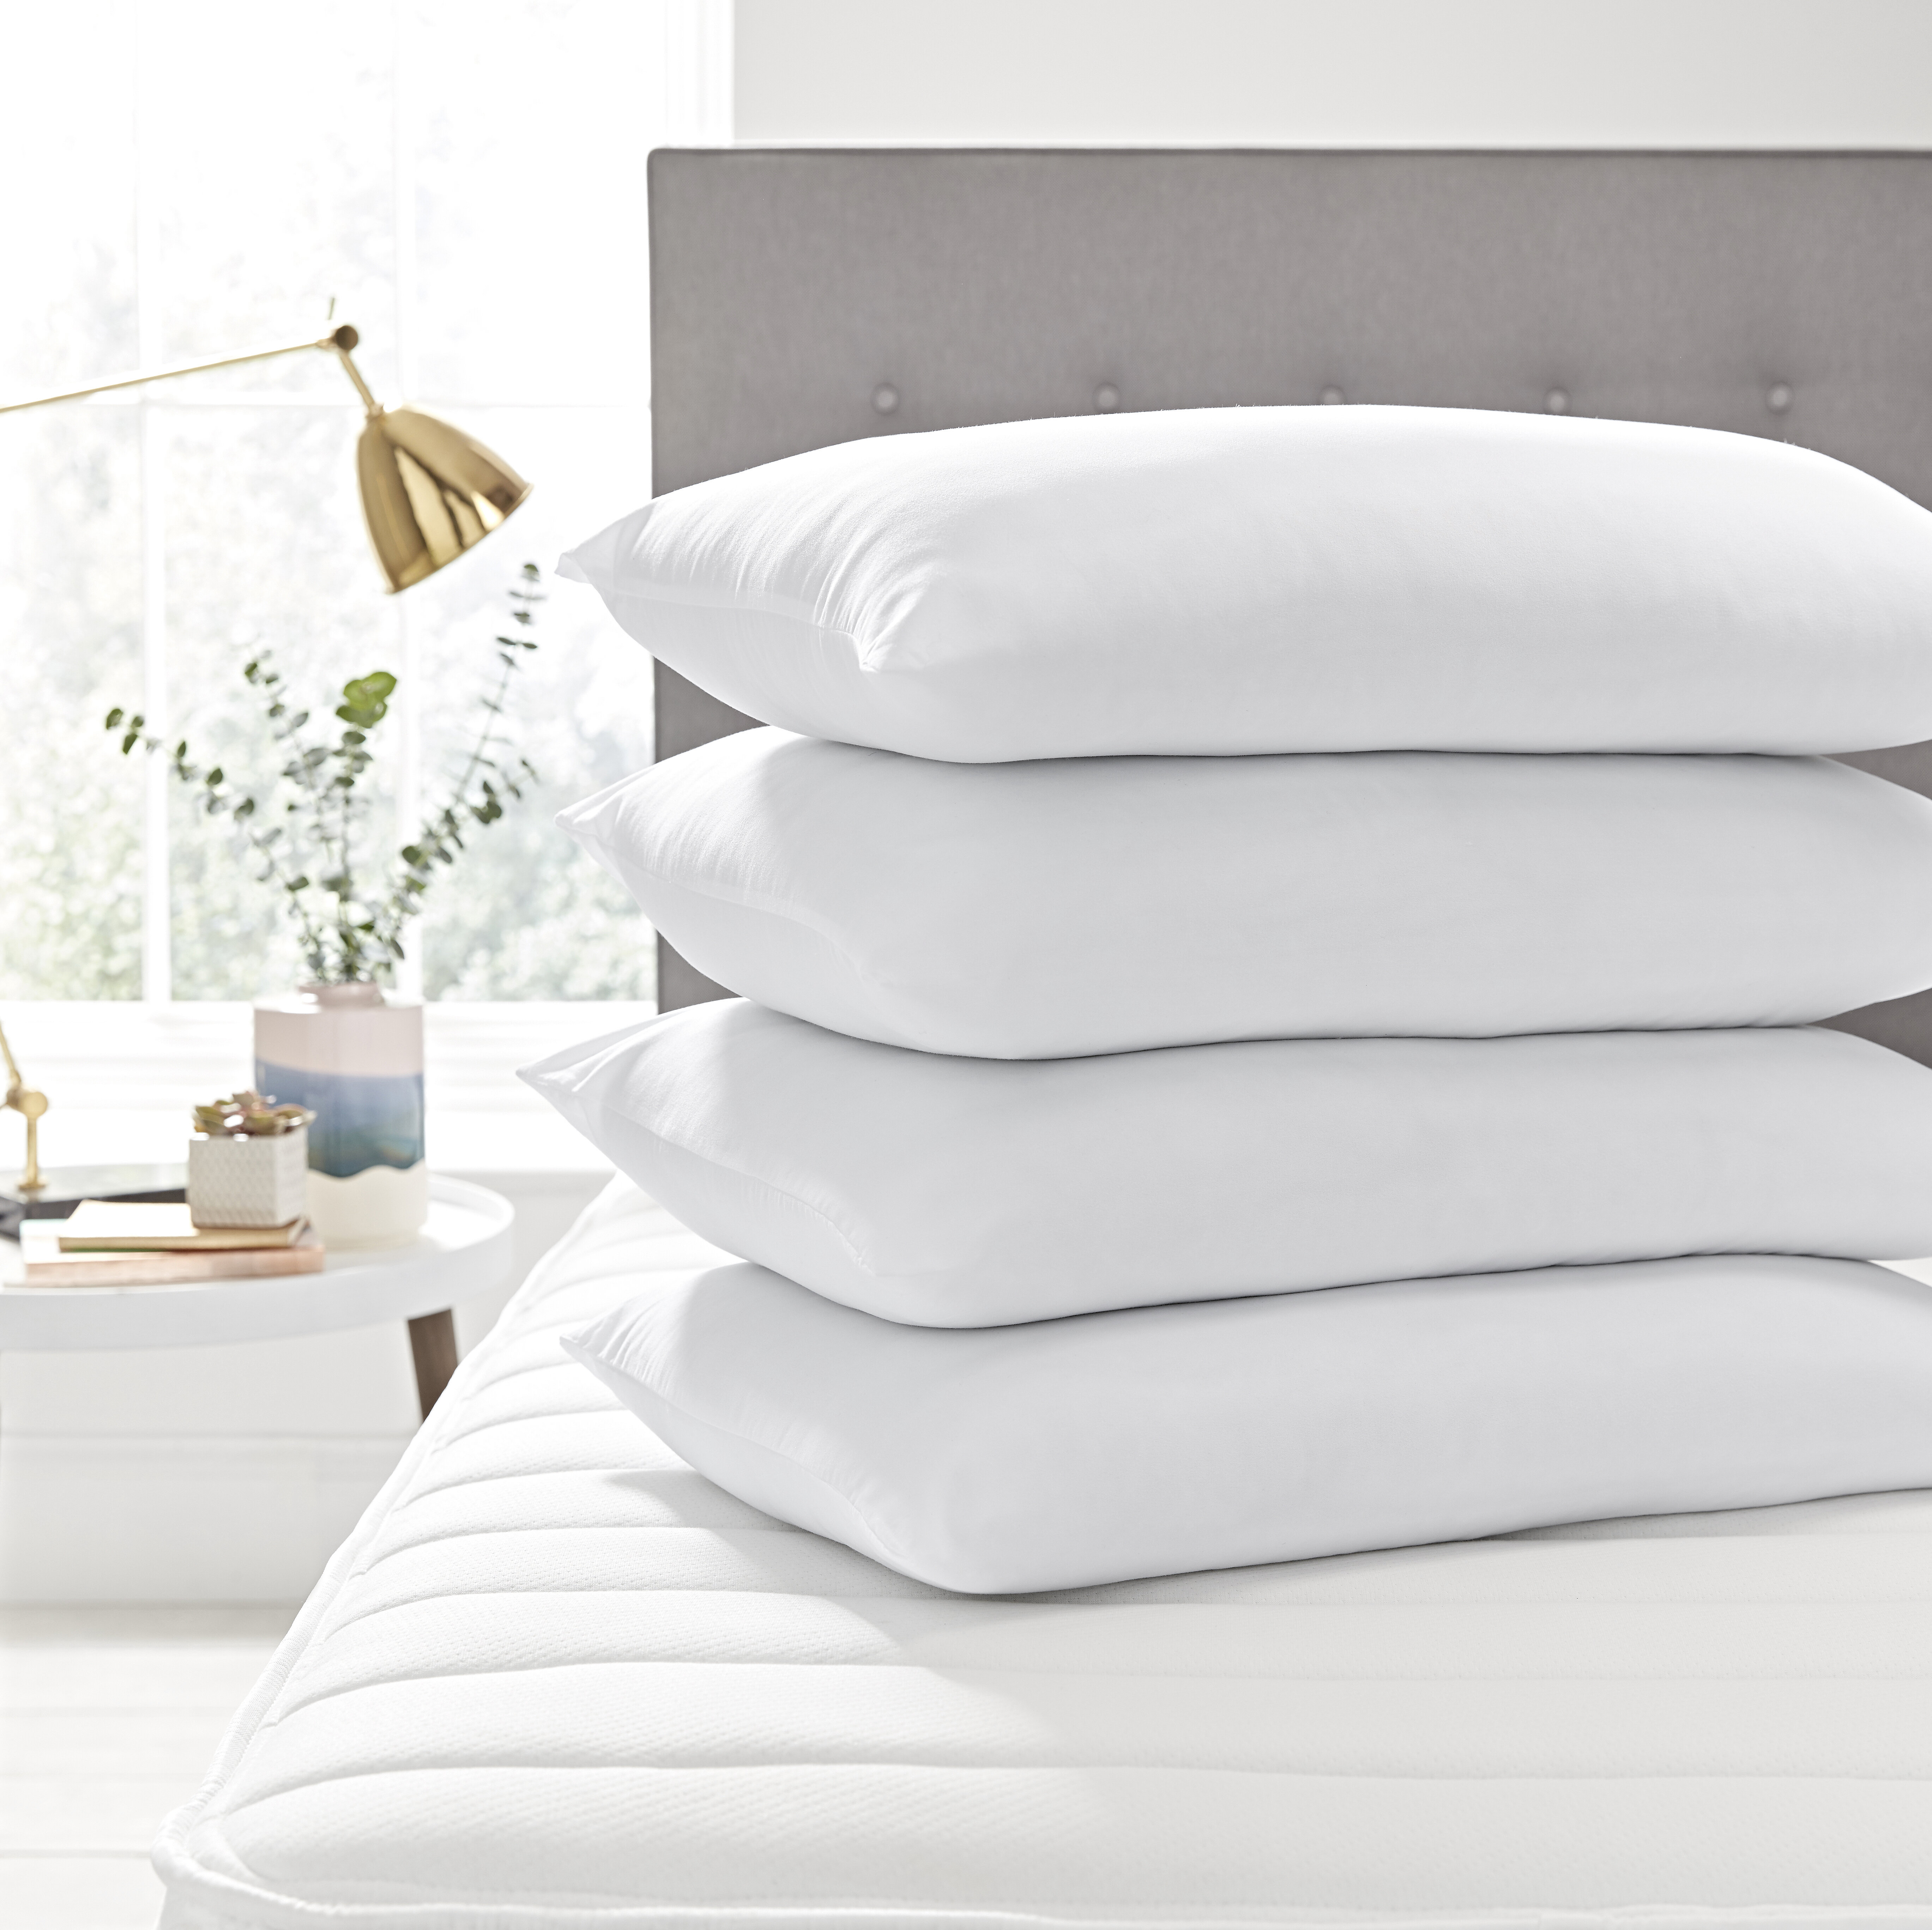 Silentnight Silentnight Deep Sleep Pillows 4 Four Pack Soft Medium Support Hotel Bed Sleep  5012701444941 